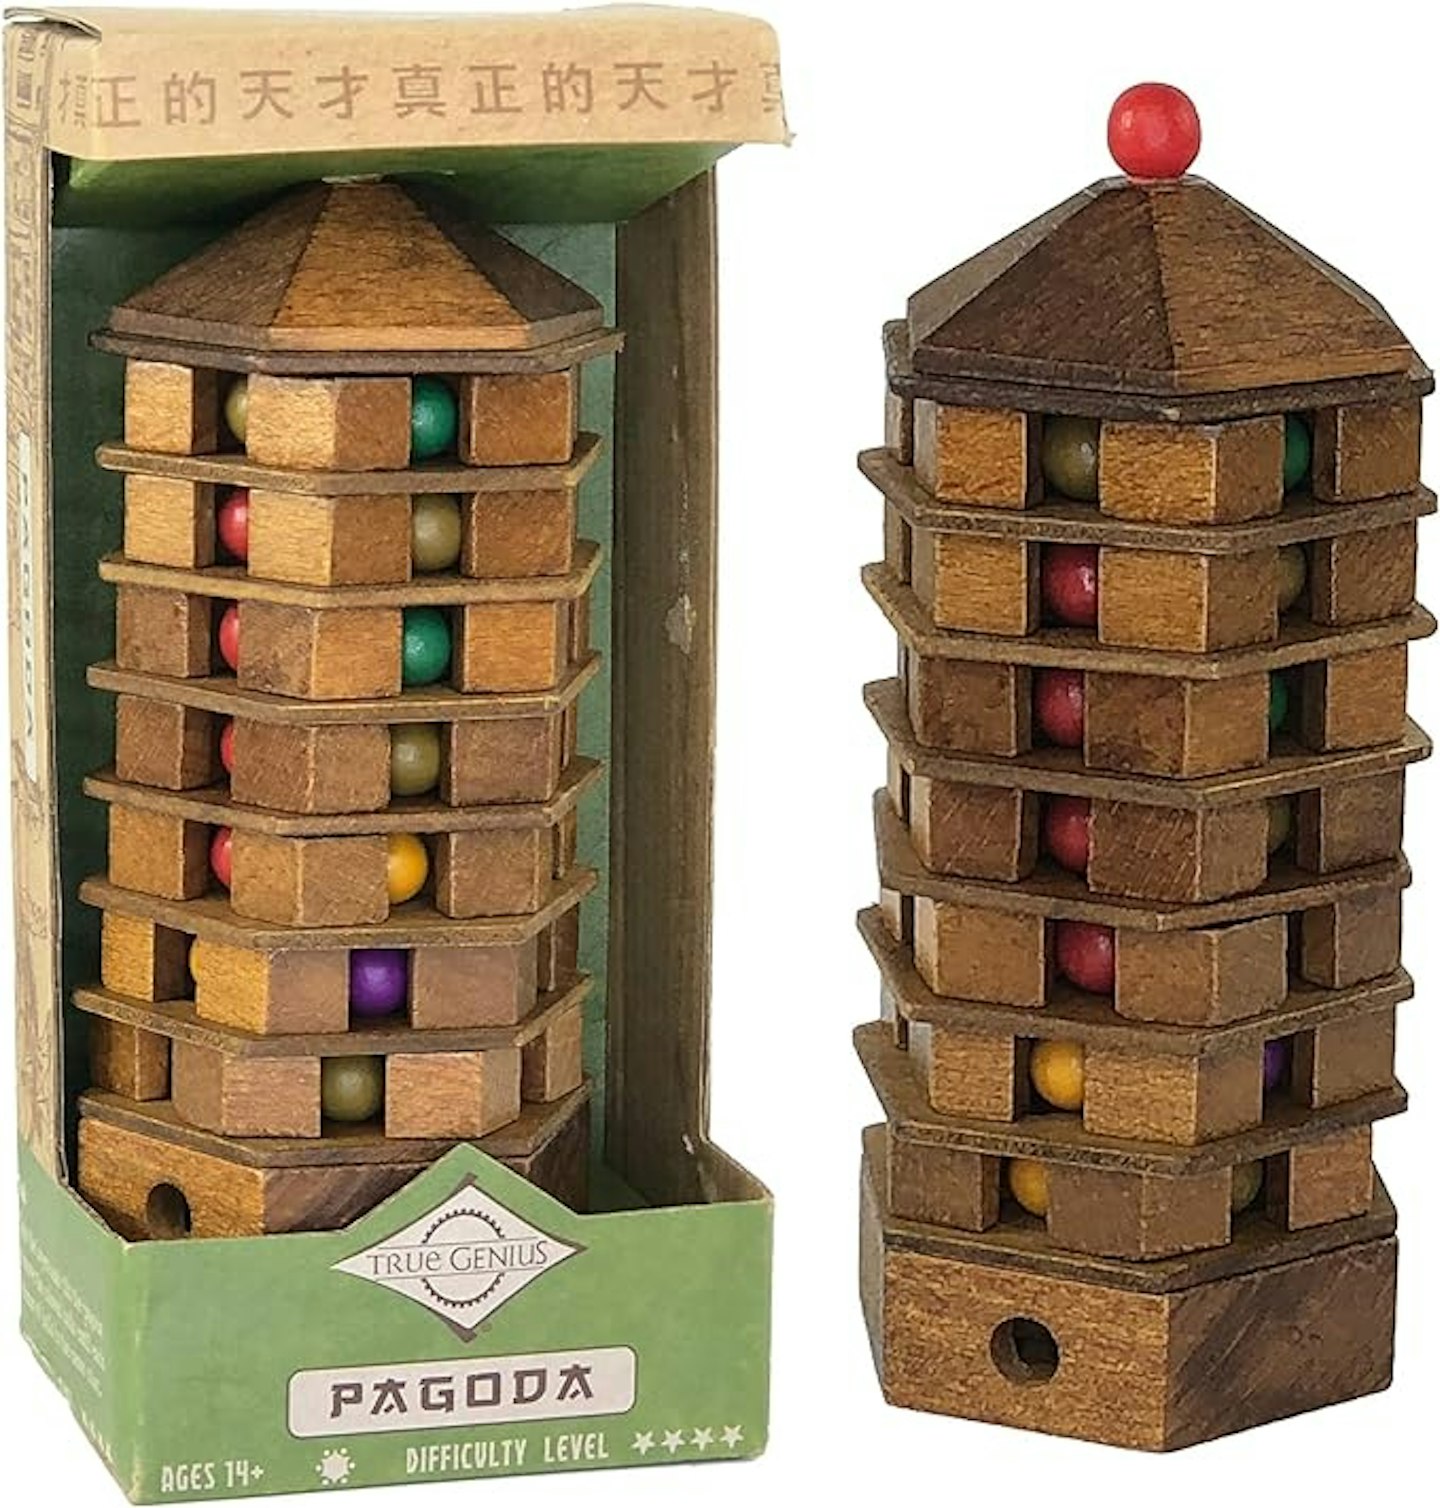 Pagoda puzzle